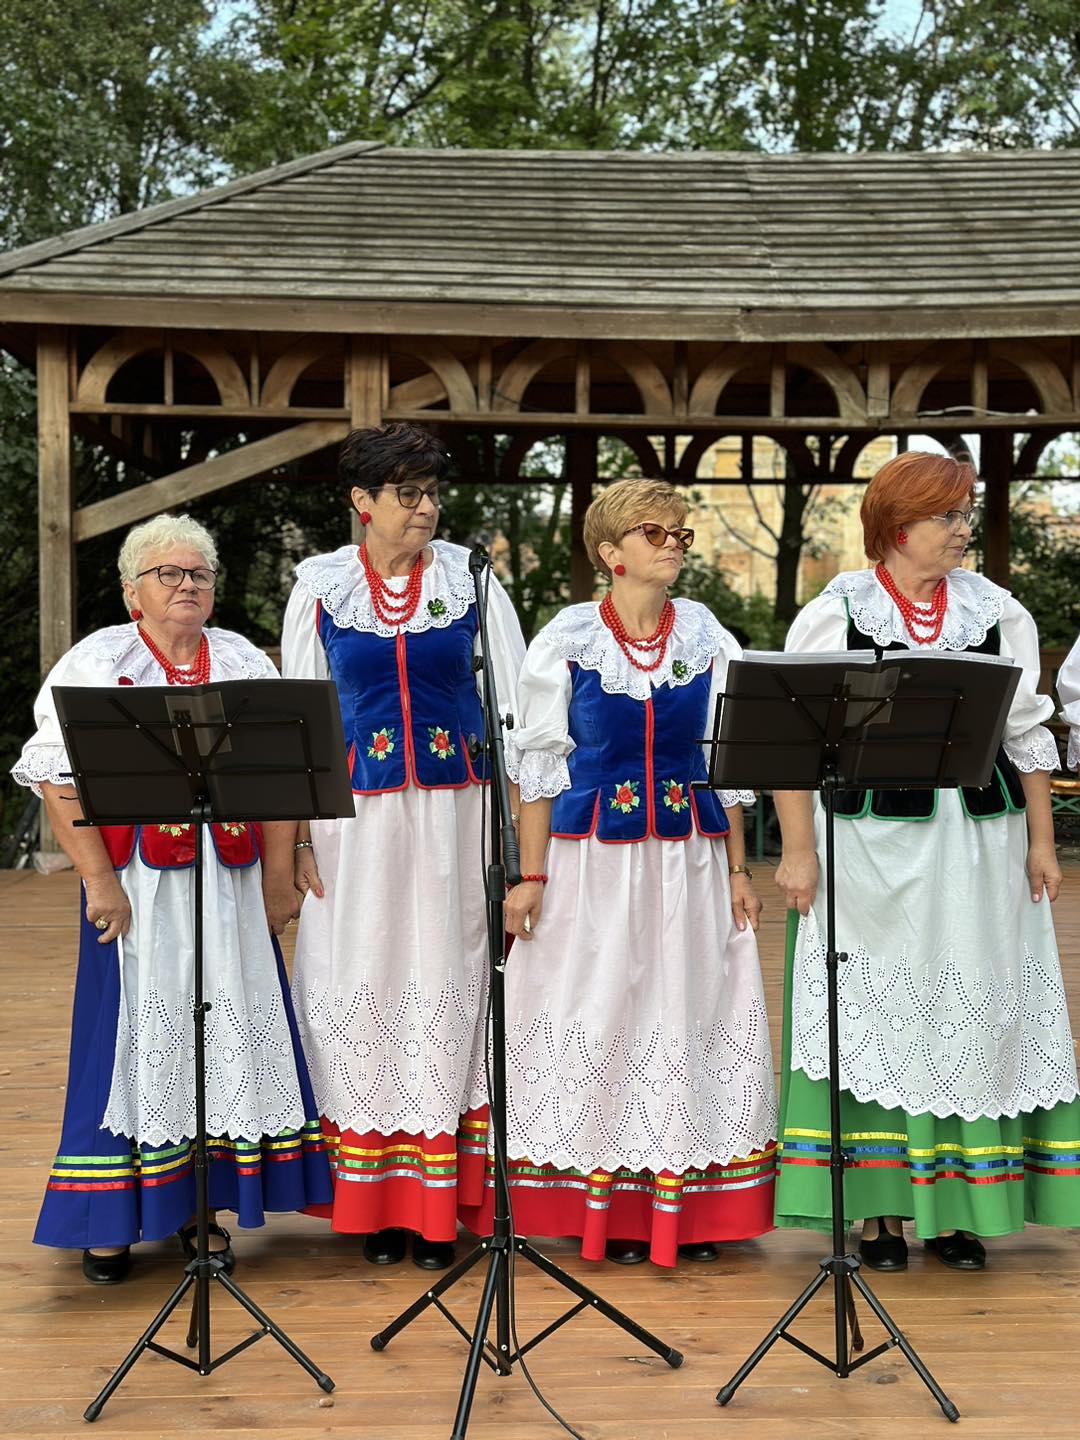 Na zdjęciu widzimy 4 śpiewające kobiety z zespołu ludowego podczas występu.